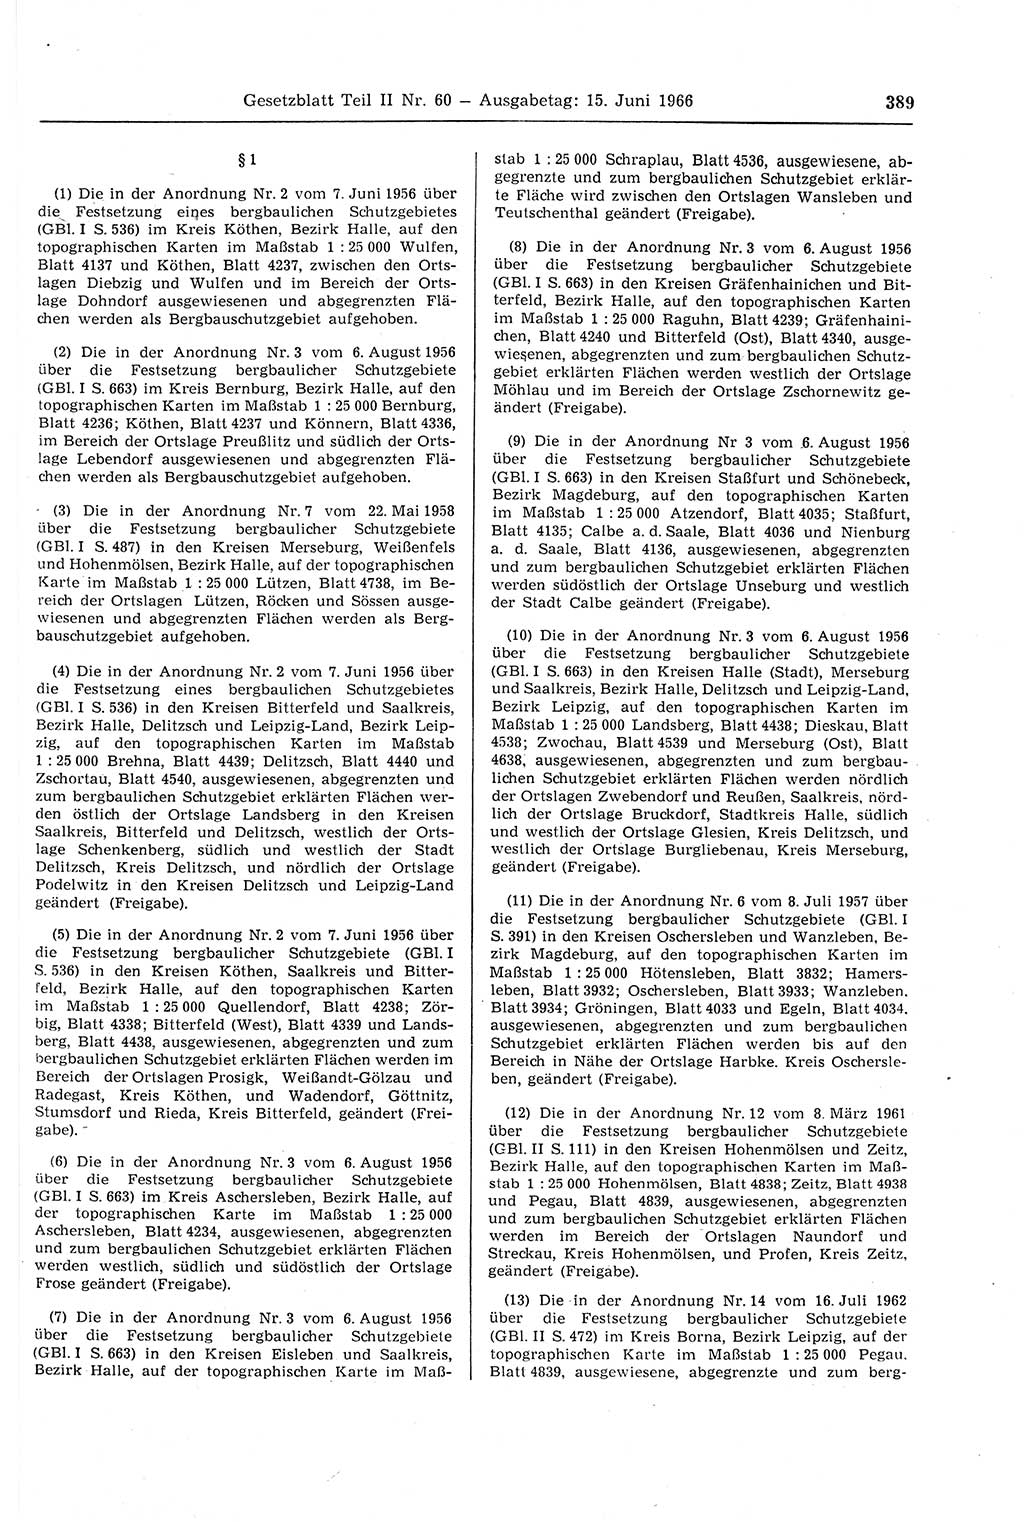 Gesetzblatt (GBl.) der Deutschen Demokratischen Republik (DDR) Teil ⅠⅠ 1966, Seite 389 (GBl. DDR ⅠⅠ 1966, S. 389)